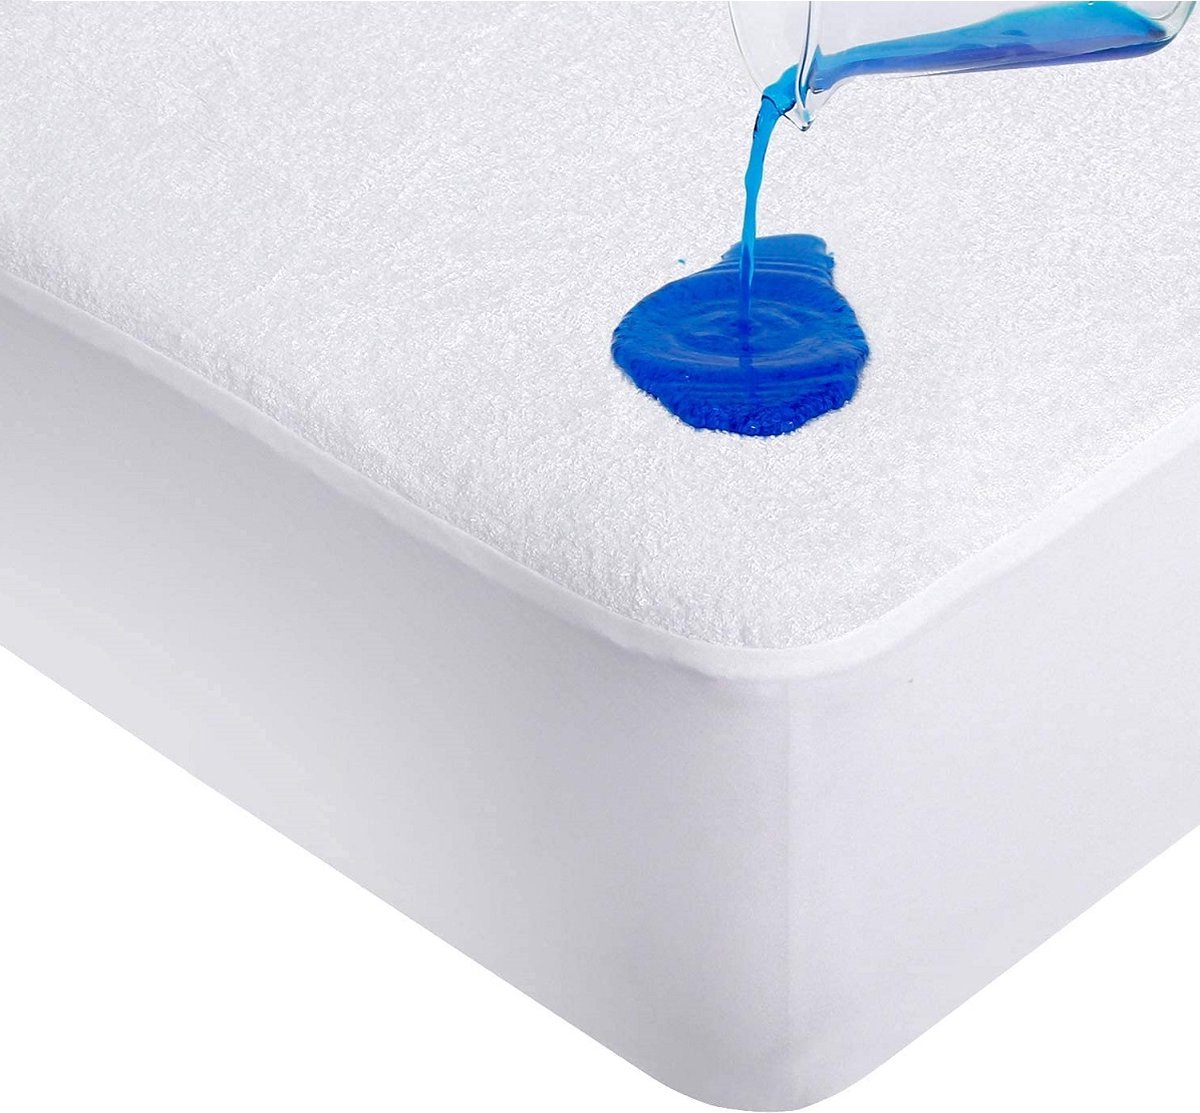 Deze vernieuwde Waterdicht Matrasbeschermer-Hoeslakenbadstof-Antibacteriëel-Rondom Elastiek is de ideale oplossing voor het beschermen van de matras tegen vloeistoffen-Wit - 1Persoons-90x200-cm - Princessmatrassen